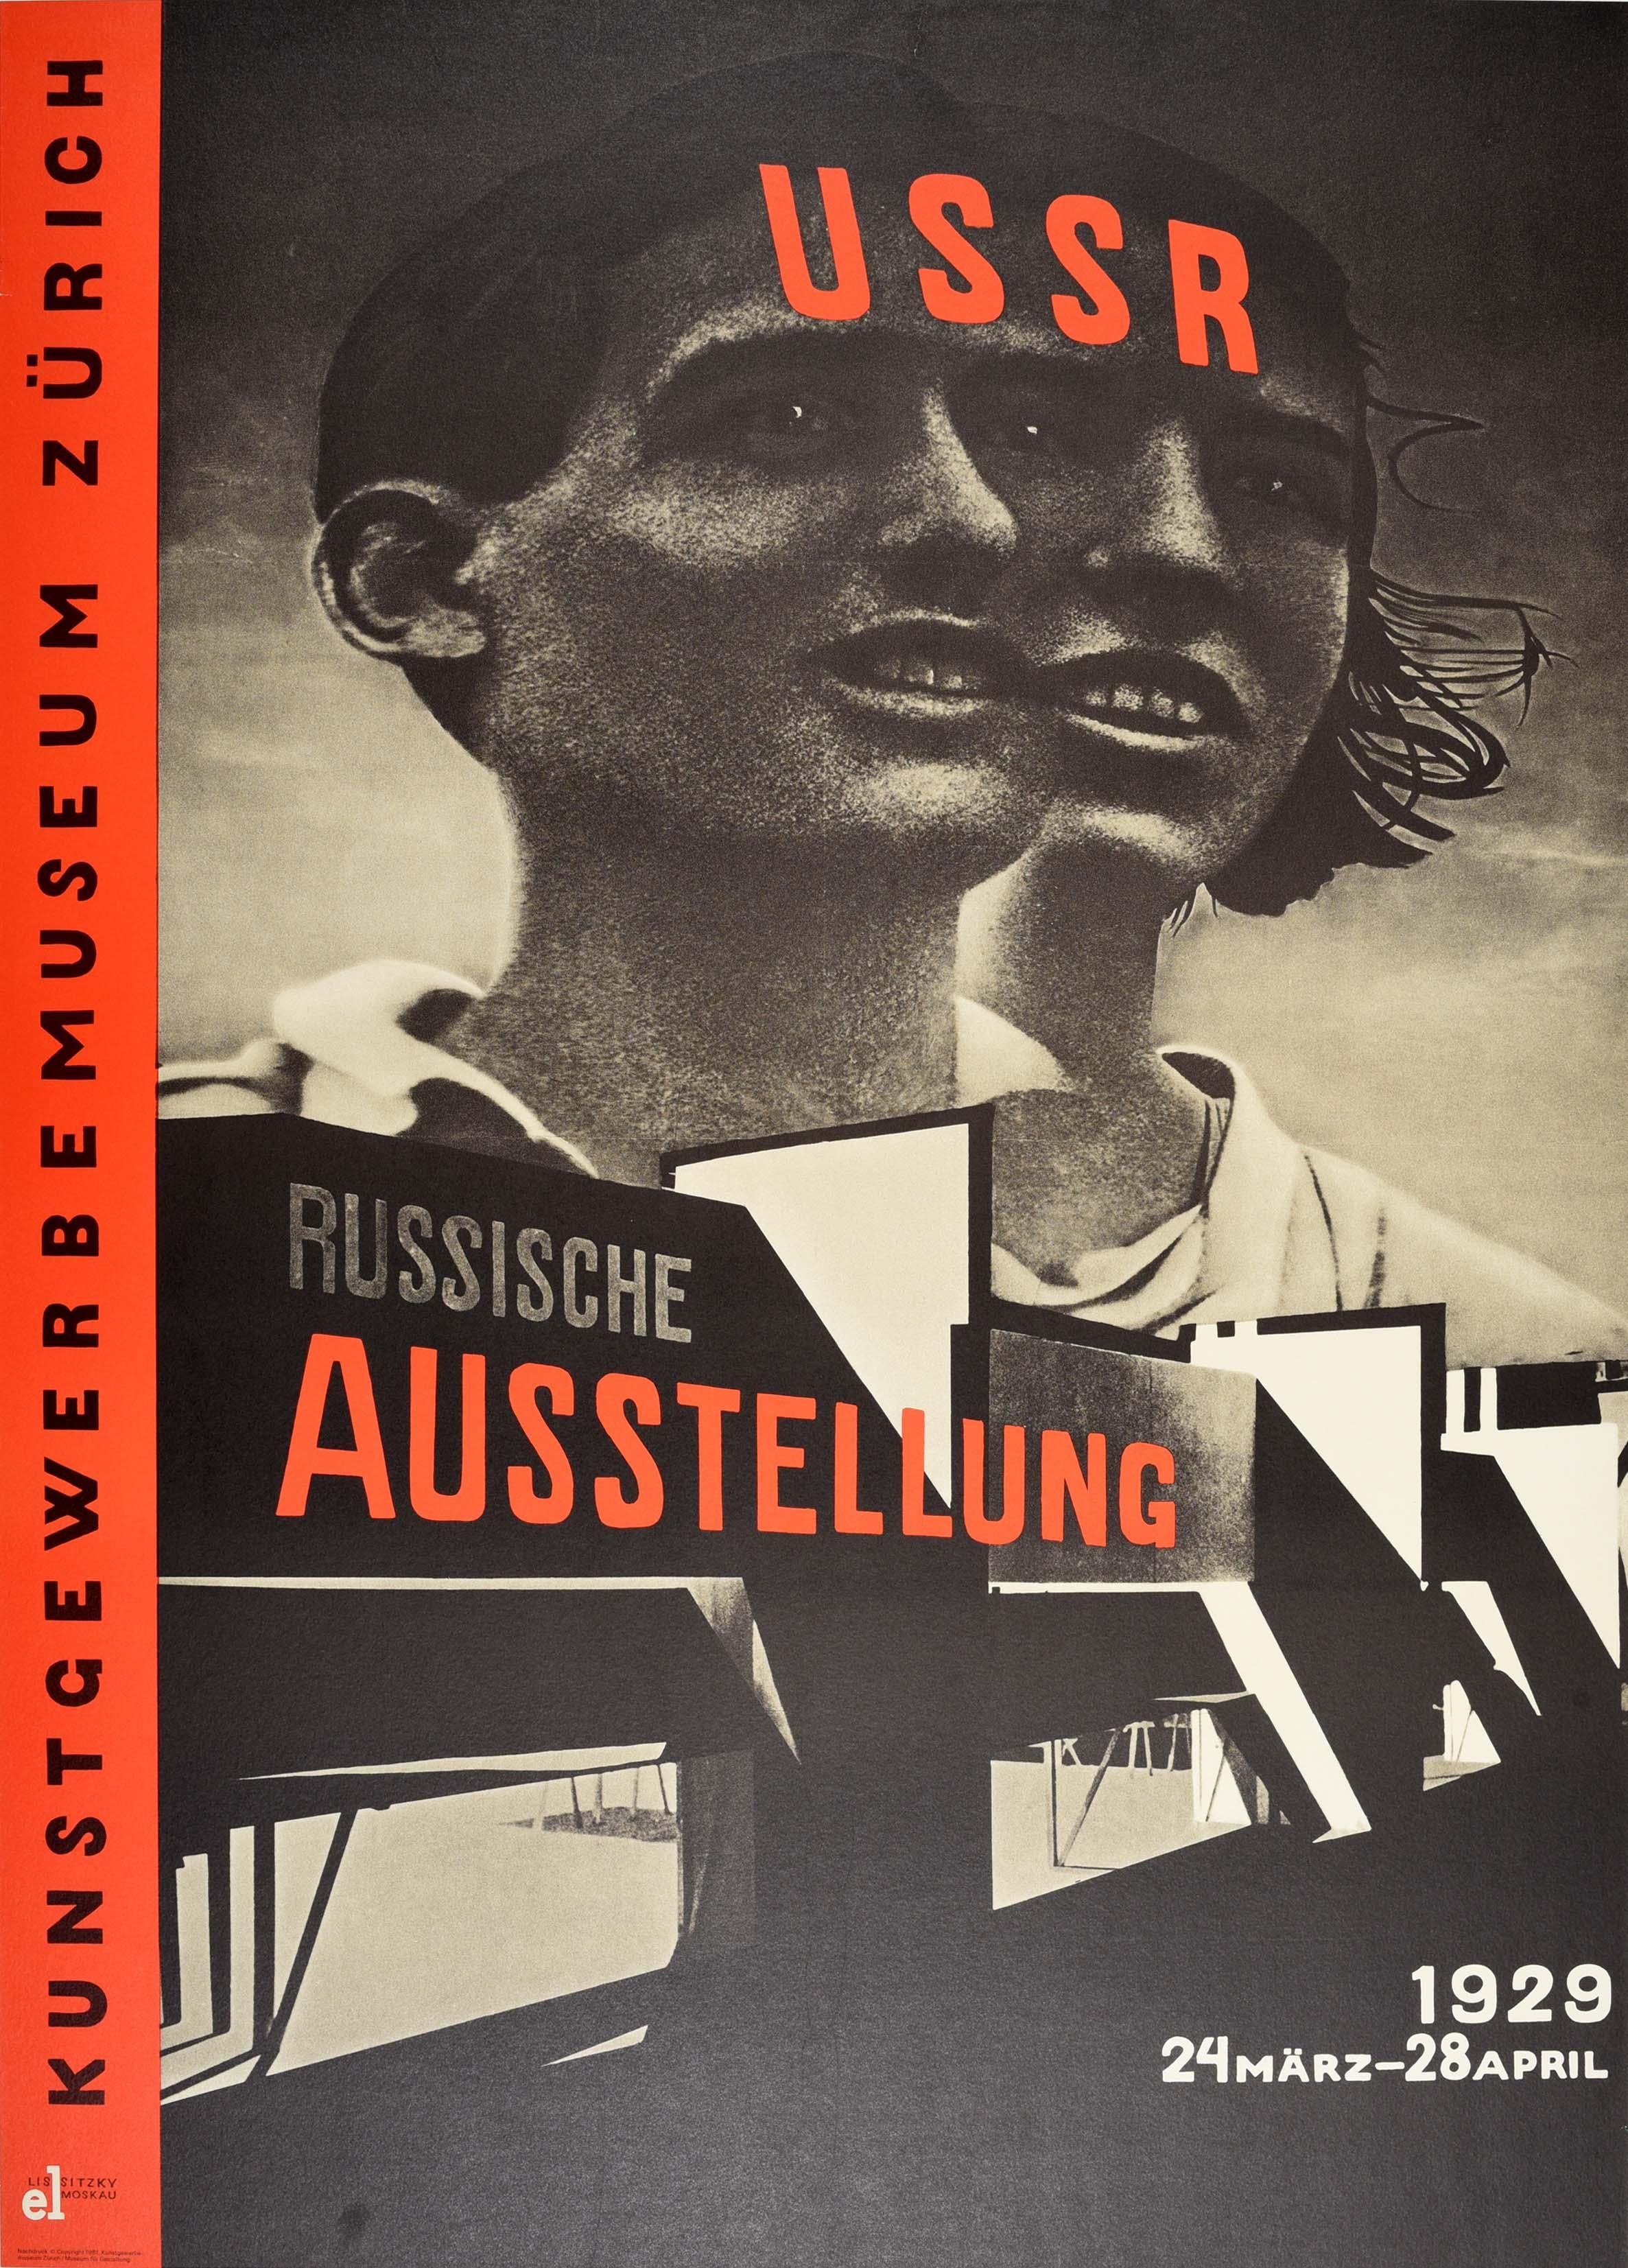 Affiche de 1980 pour l'exposition russe URSS de 1929, Musée de design constructiviste de Zurich